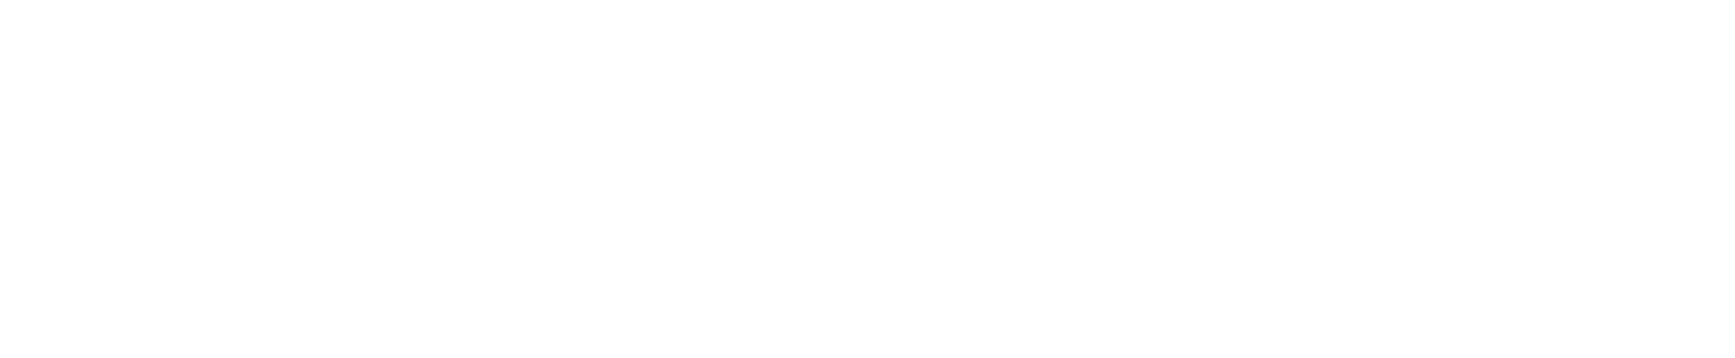 GOAL-Innovation-Lab-logo-full-white